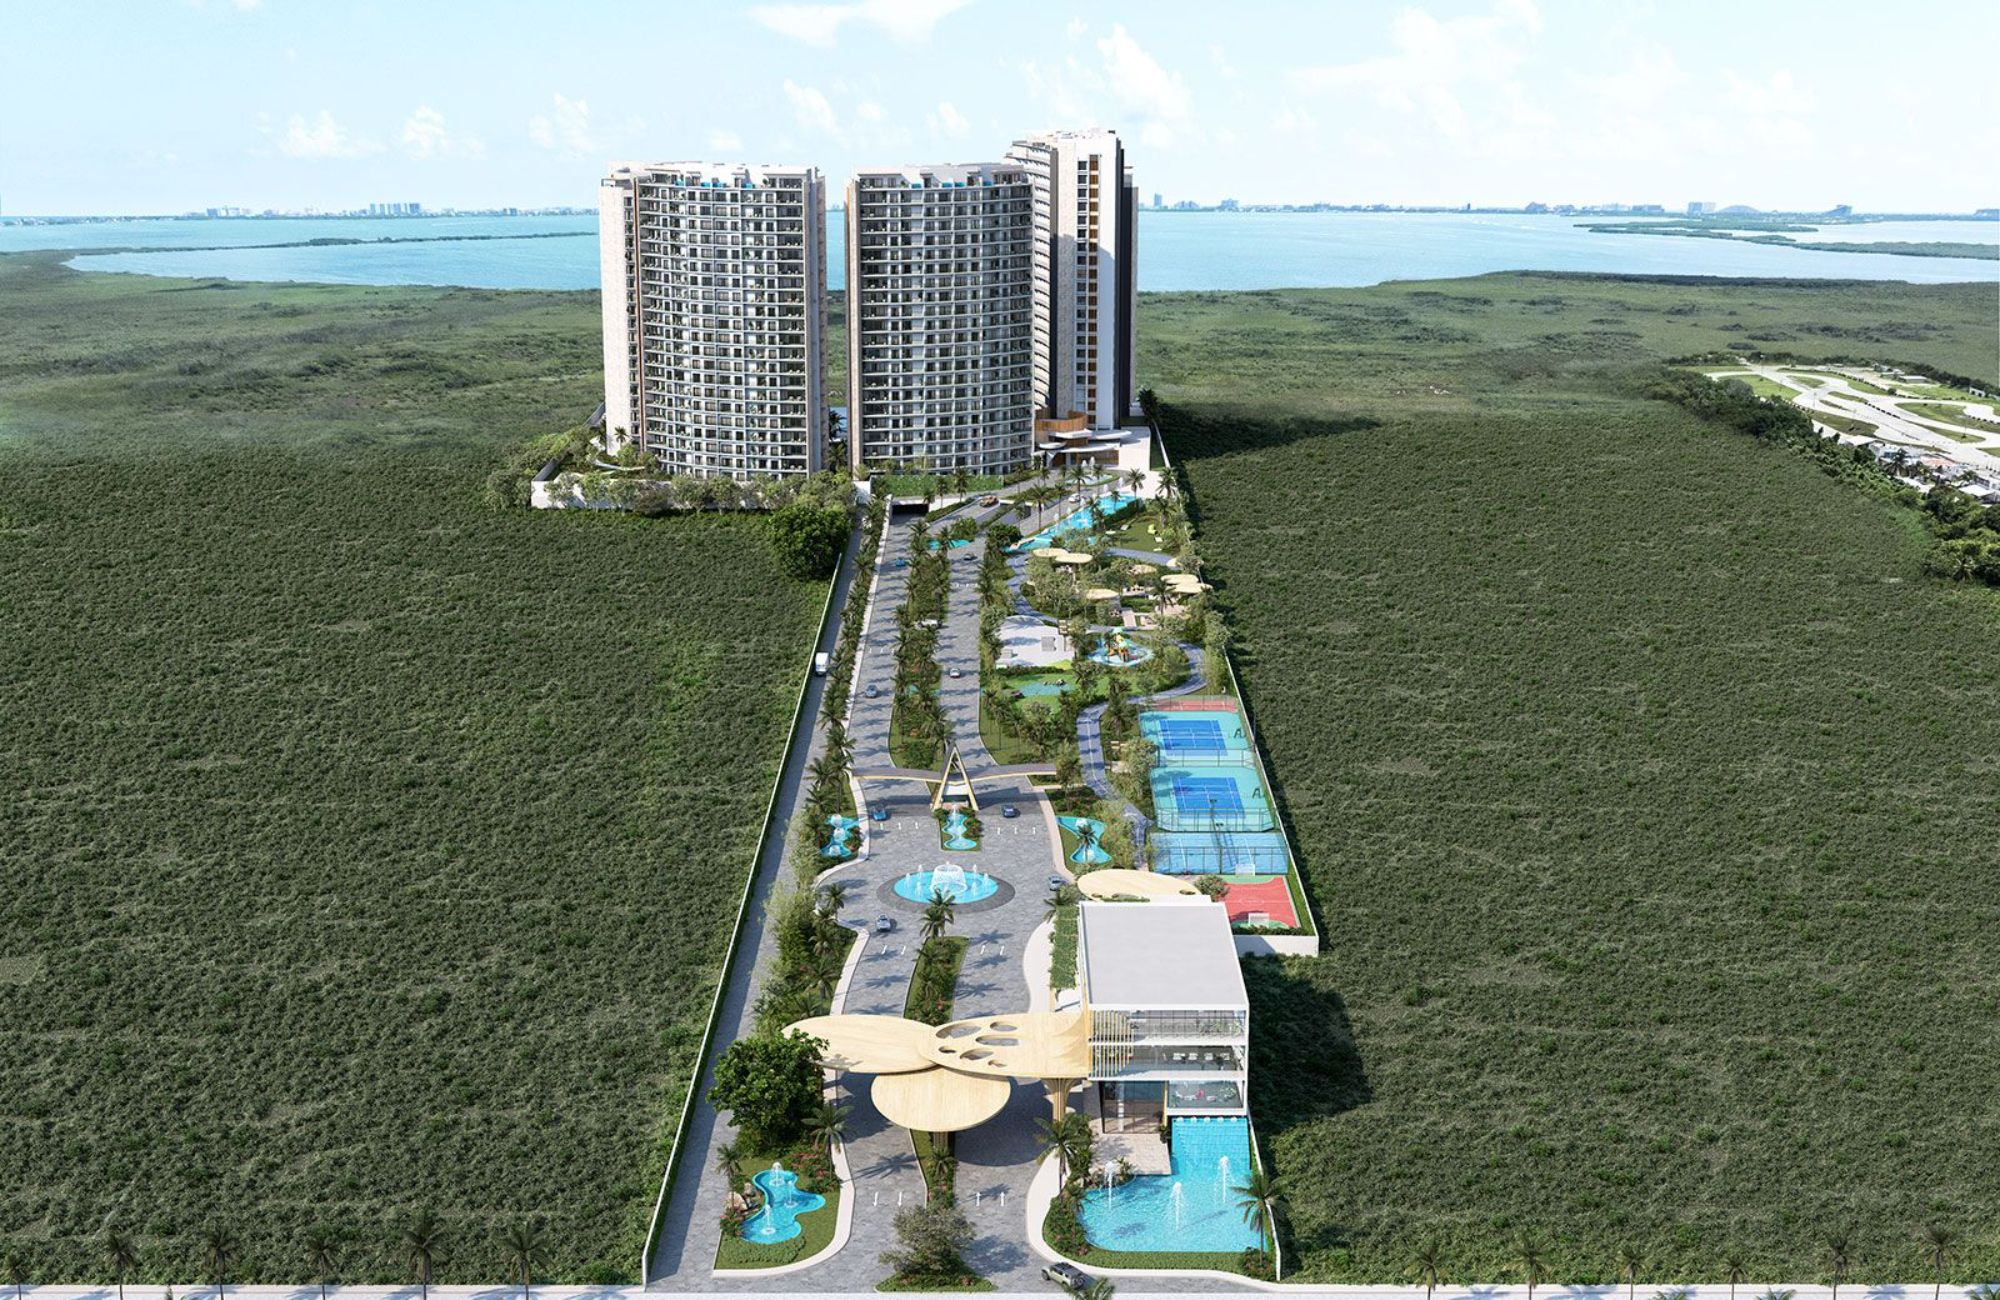 Departamento con dos terrazas, alberca, Gimnasio, pre-construccion, venta, Cancun.